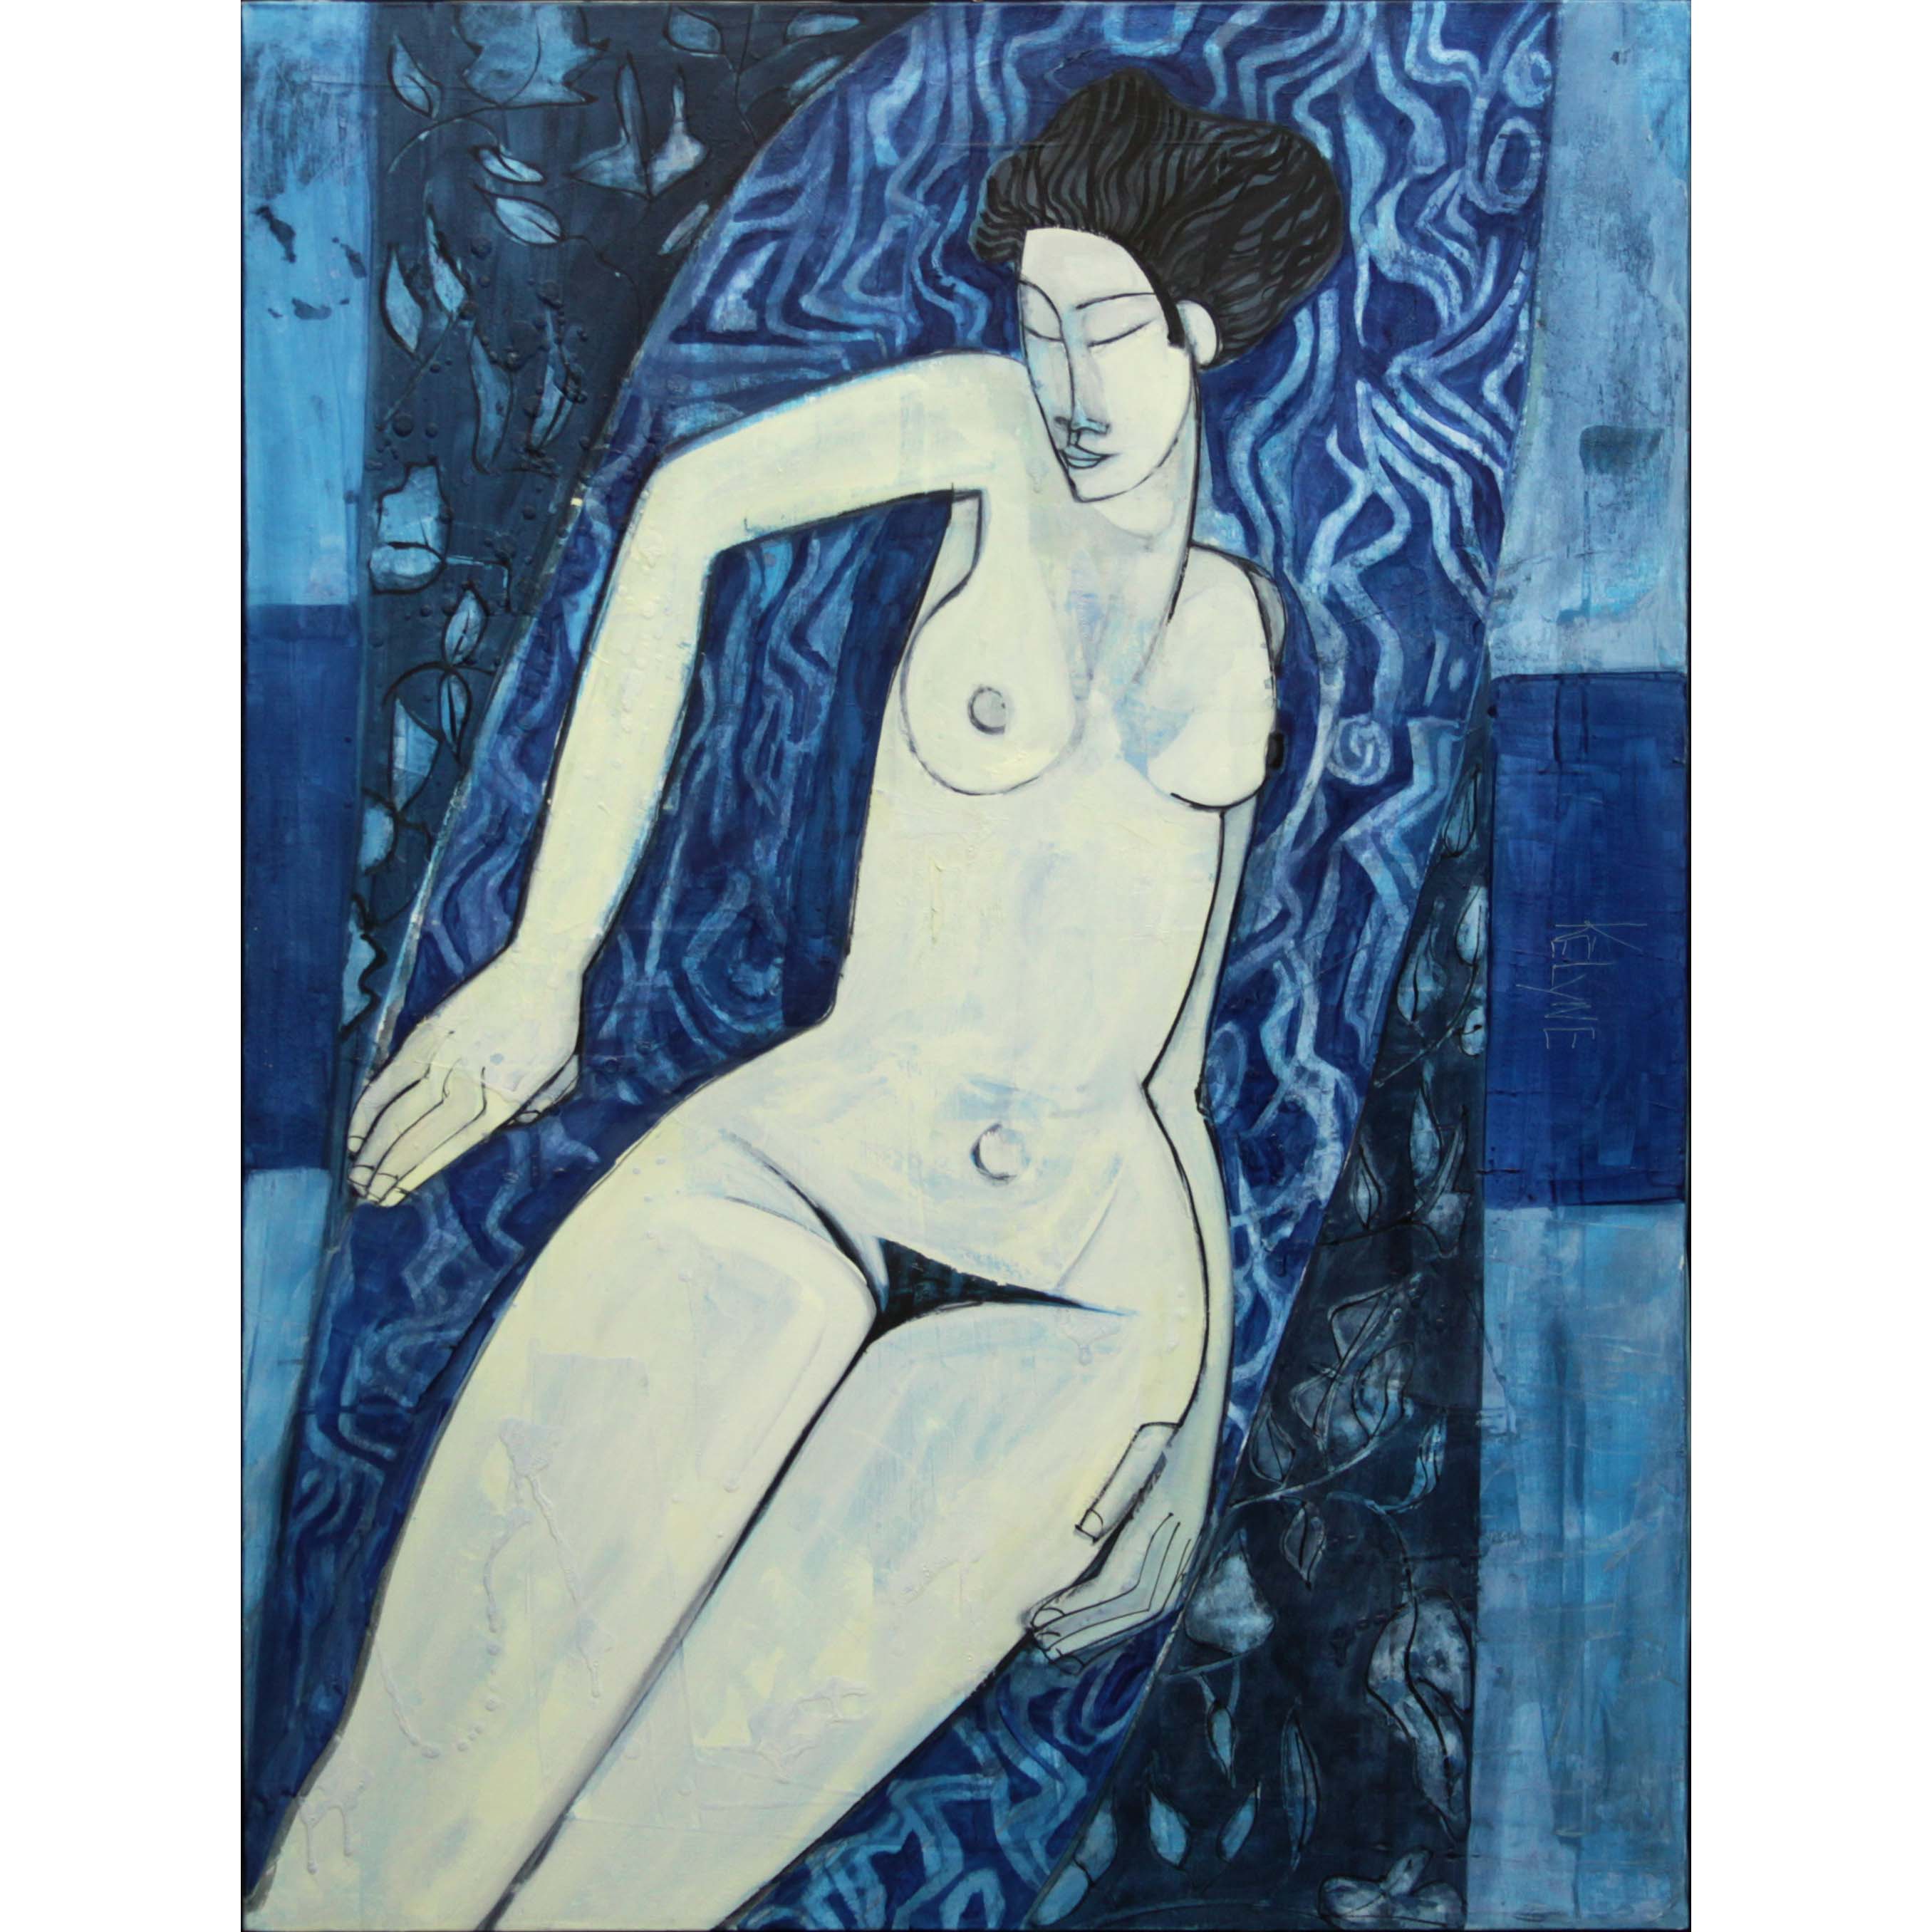 6S -- Kelyne, Vietnamese (born 1955) Oil on Canvas, "La toute puissance de la nuit". Signed.